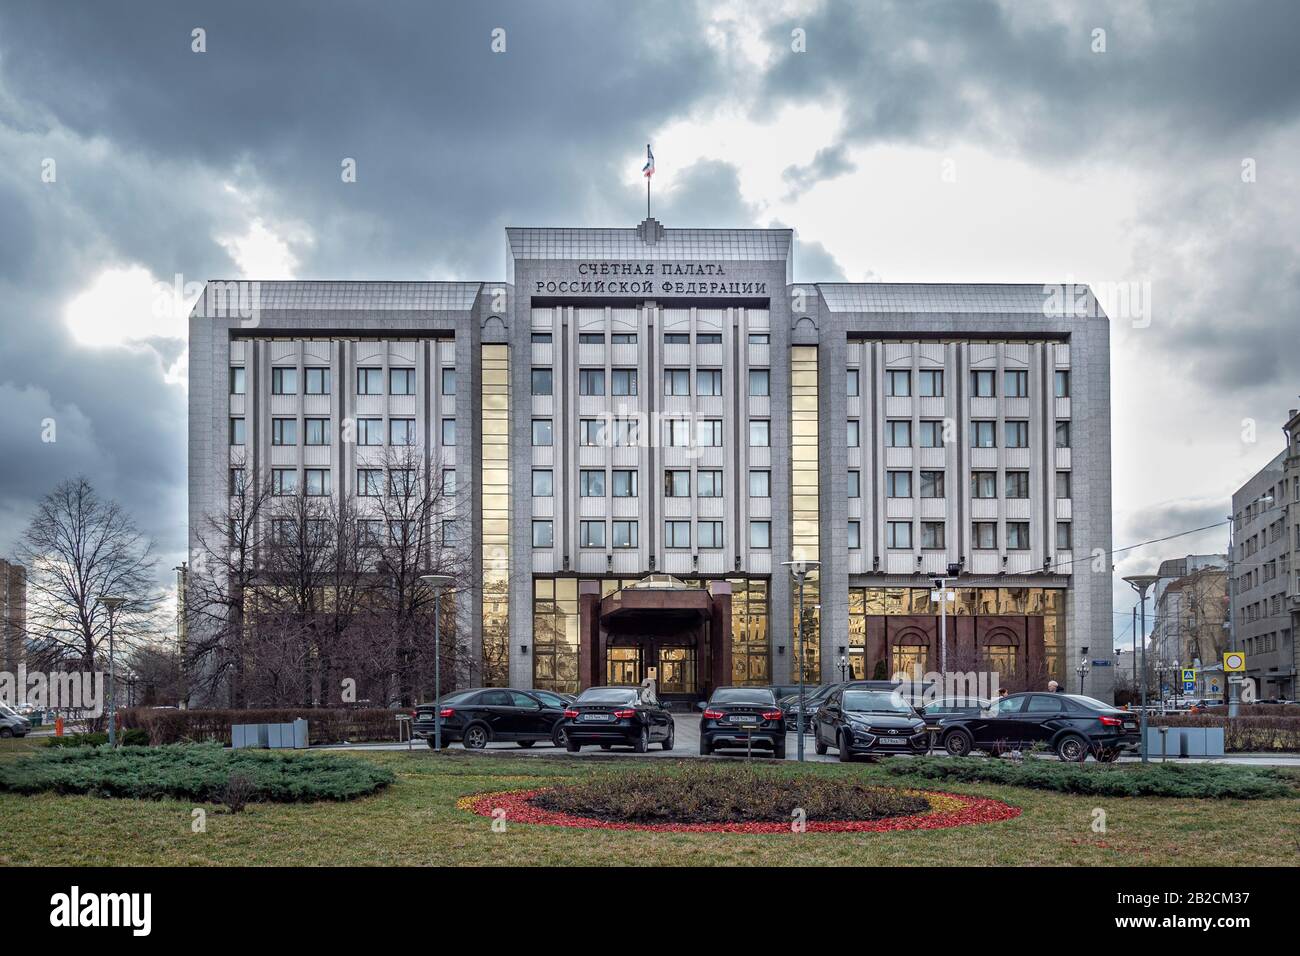 Счетная палата рф это. Счётная палата Российской Федерации. Счётная палата Российской Федерации здание. Счетная палата Москвы. Здание Счетной палаты в Москве.